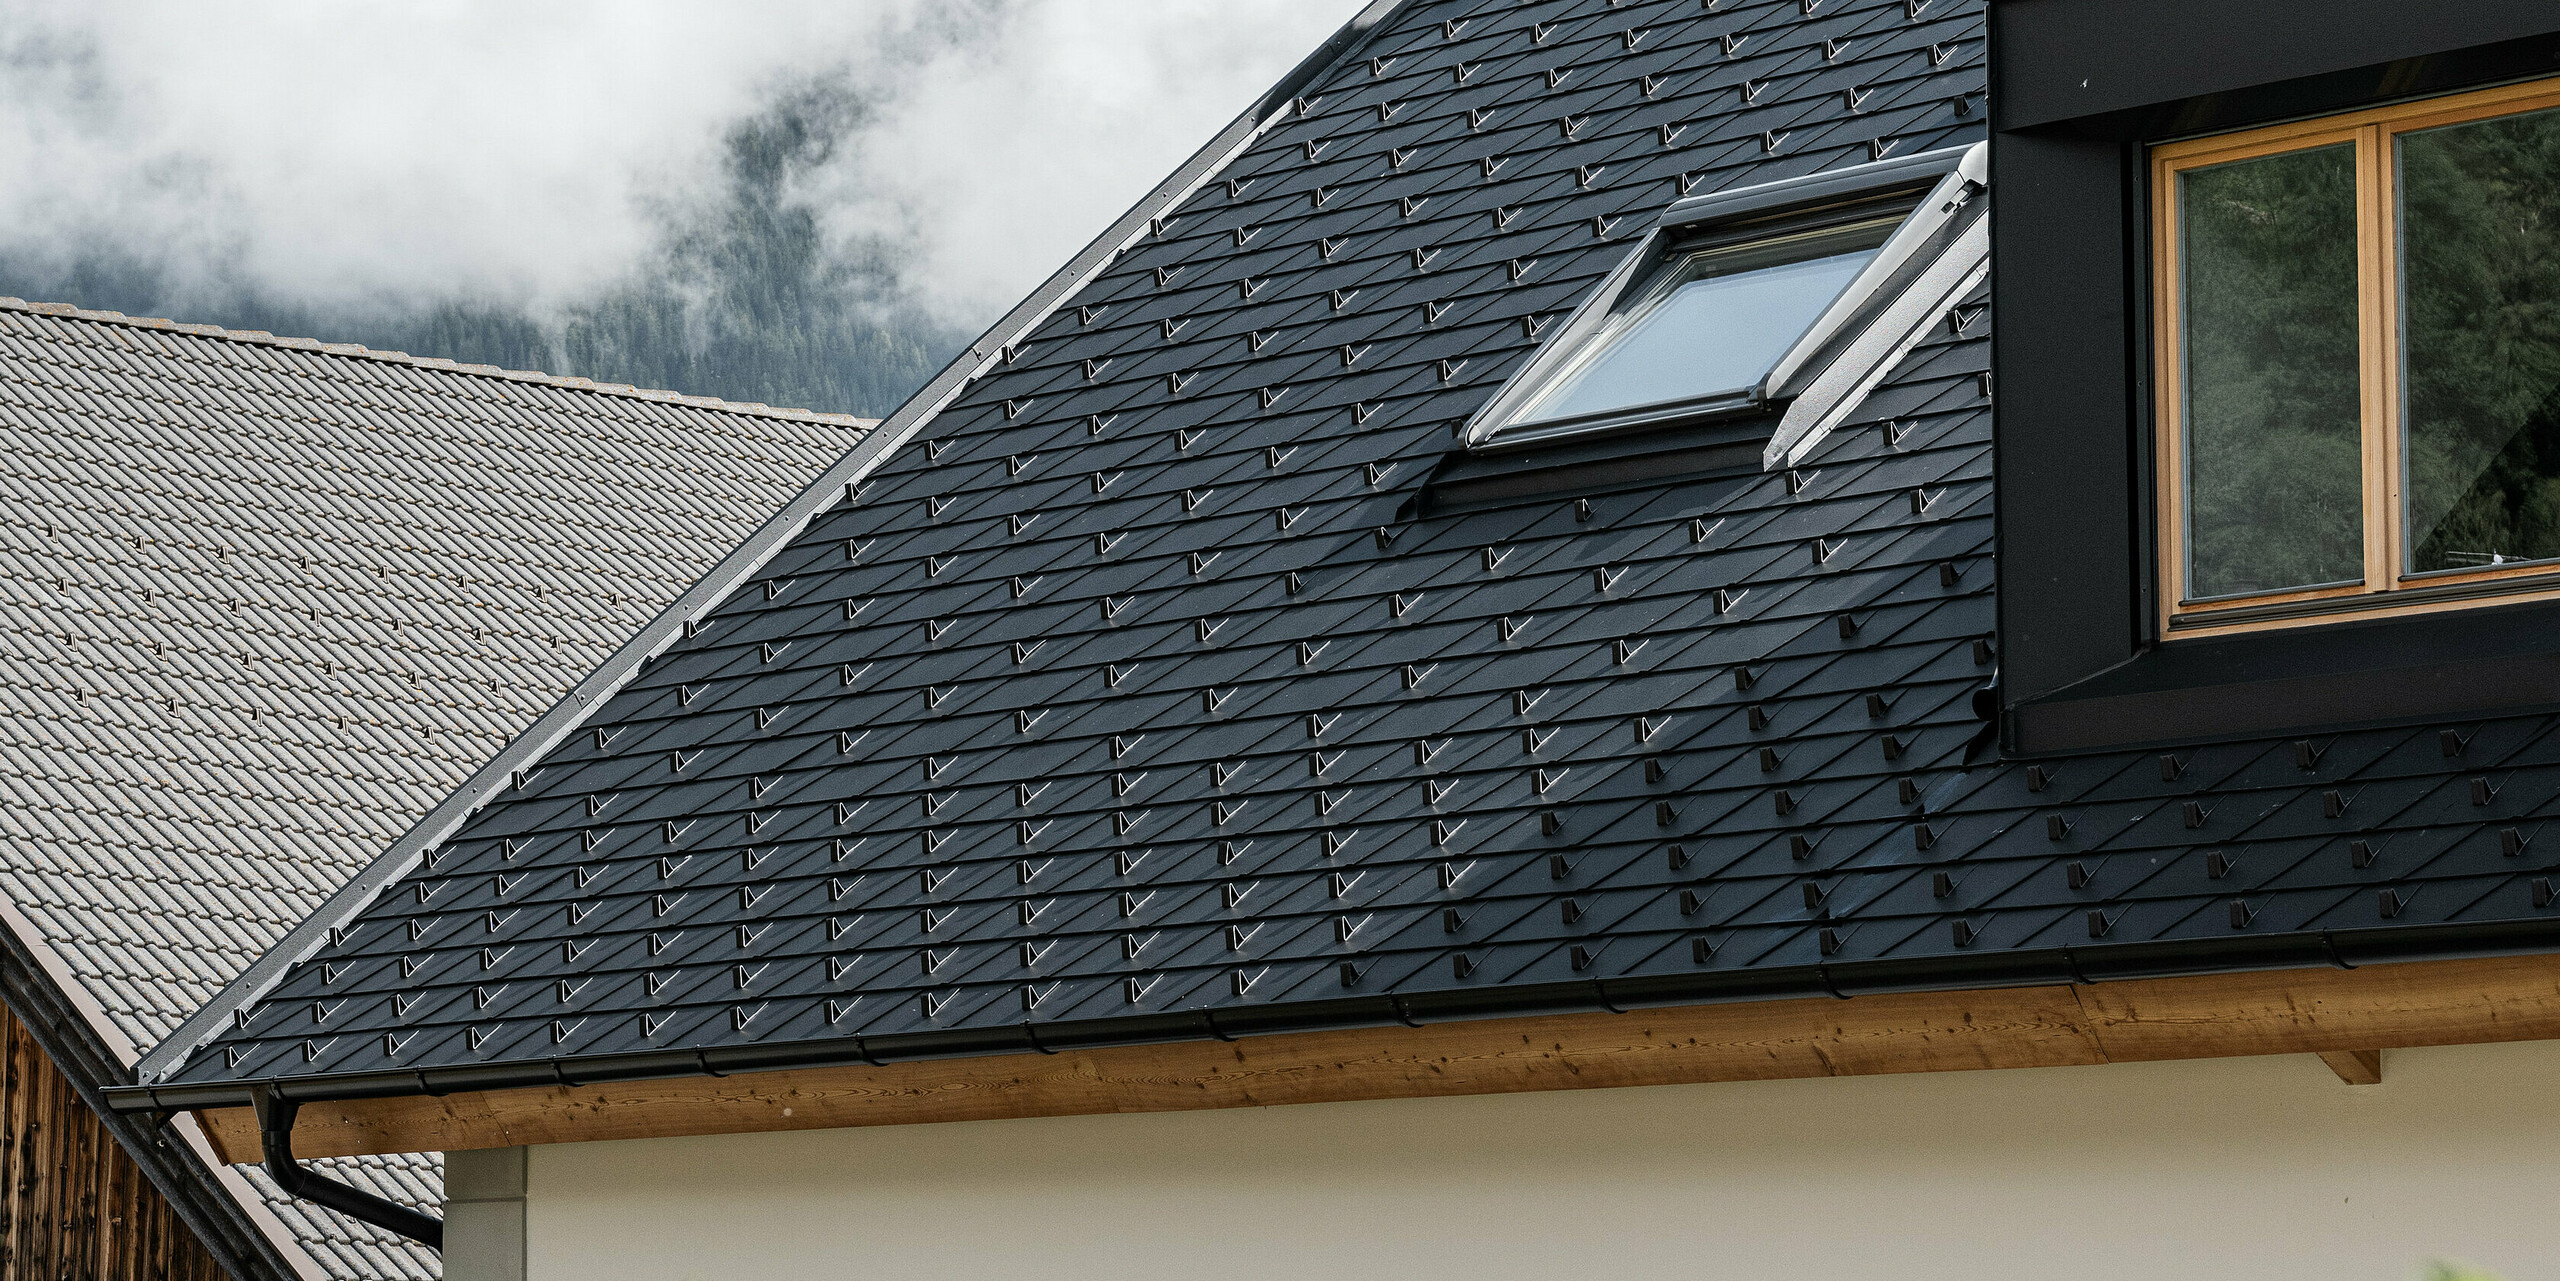 Detailný pohľad na strešný systém PREFA odolný voči vetru a poveternostným vplyvom. Sedlová strecha Ausserwegerhof v Južnom Tirolsku bola pokrytá robustnými strešnými šindľami PREFA DS.19 v antracitovej farbe P.10. Estetický dizajn strechy je obklopený pôsobivou horskou kulisou údolia Antholz.